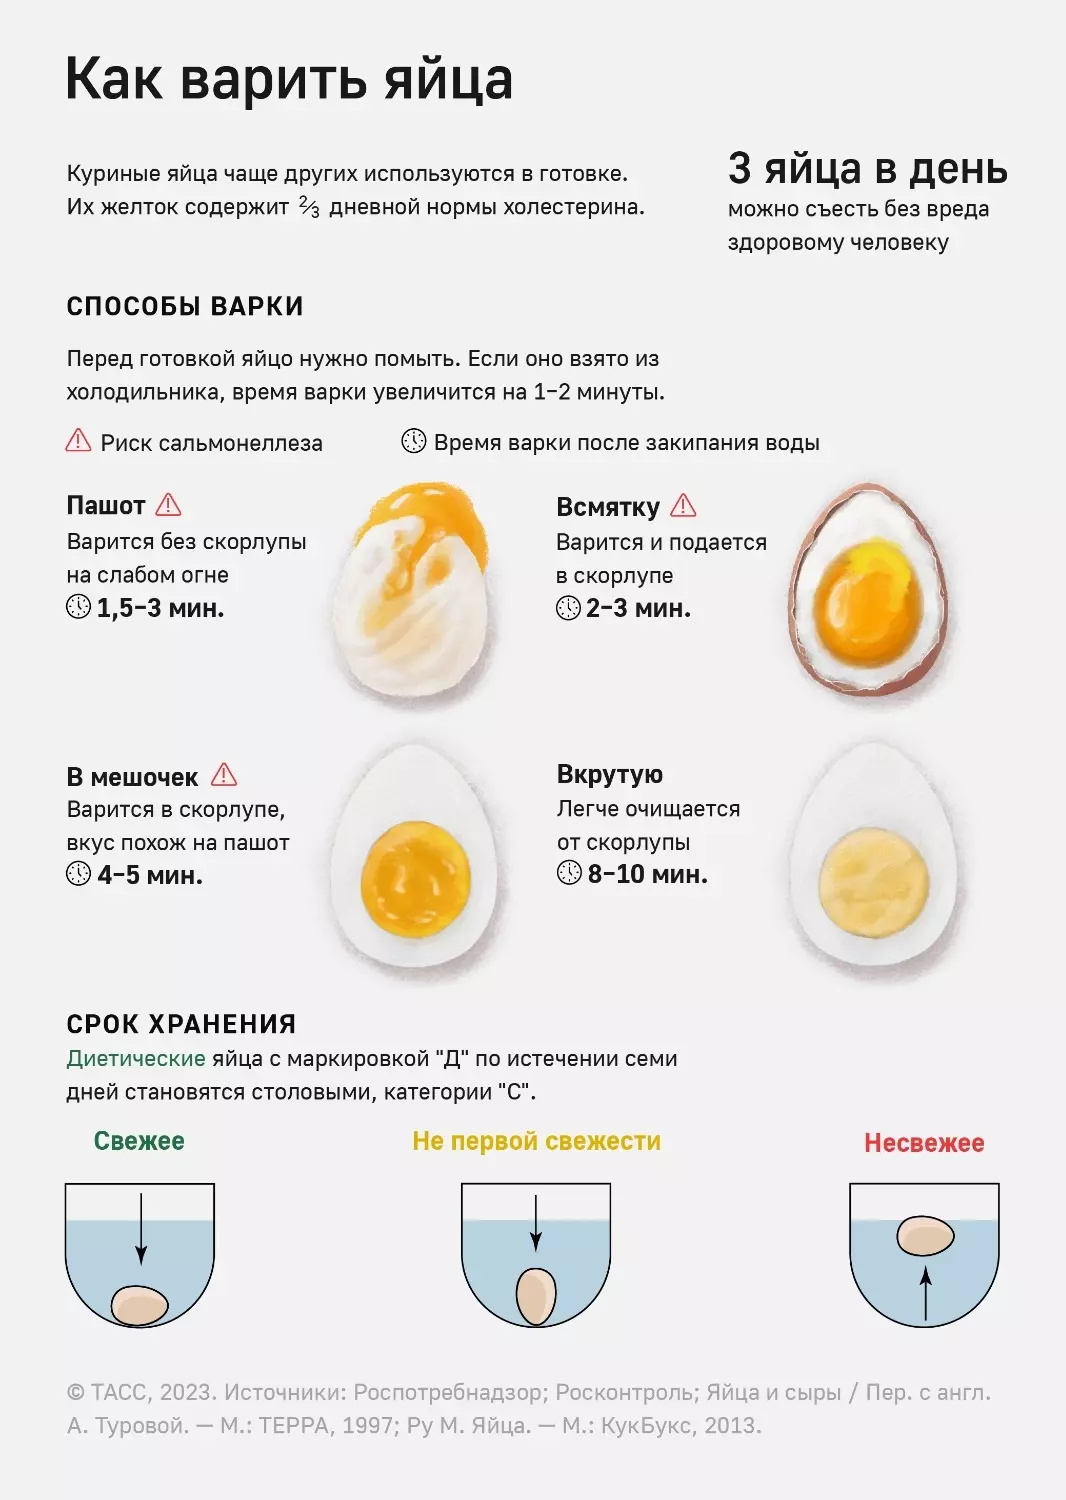 Правила варки яиц